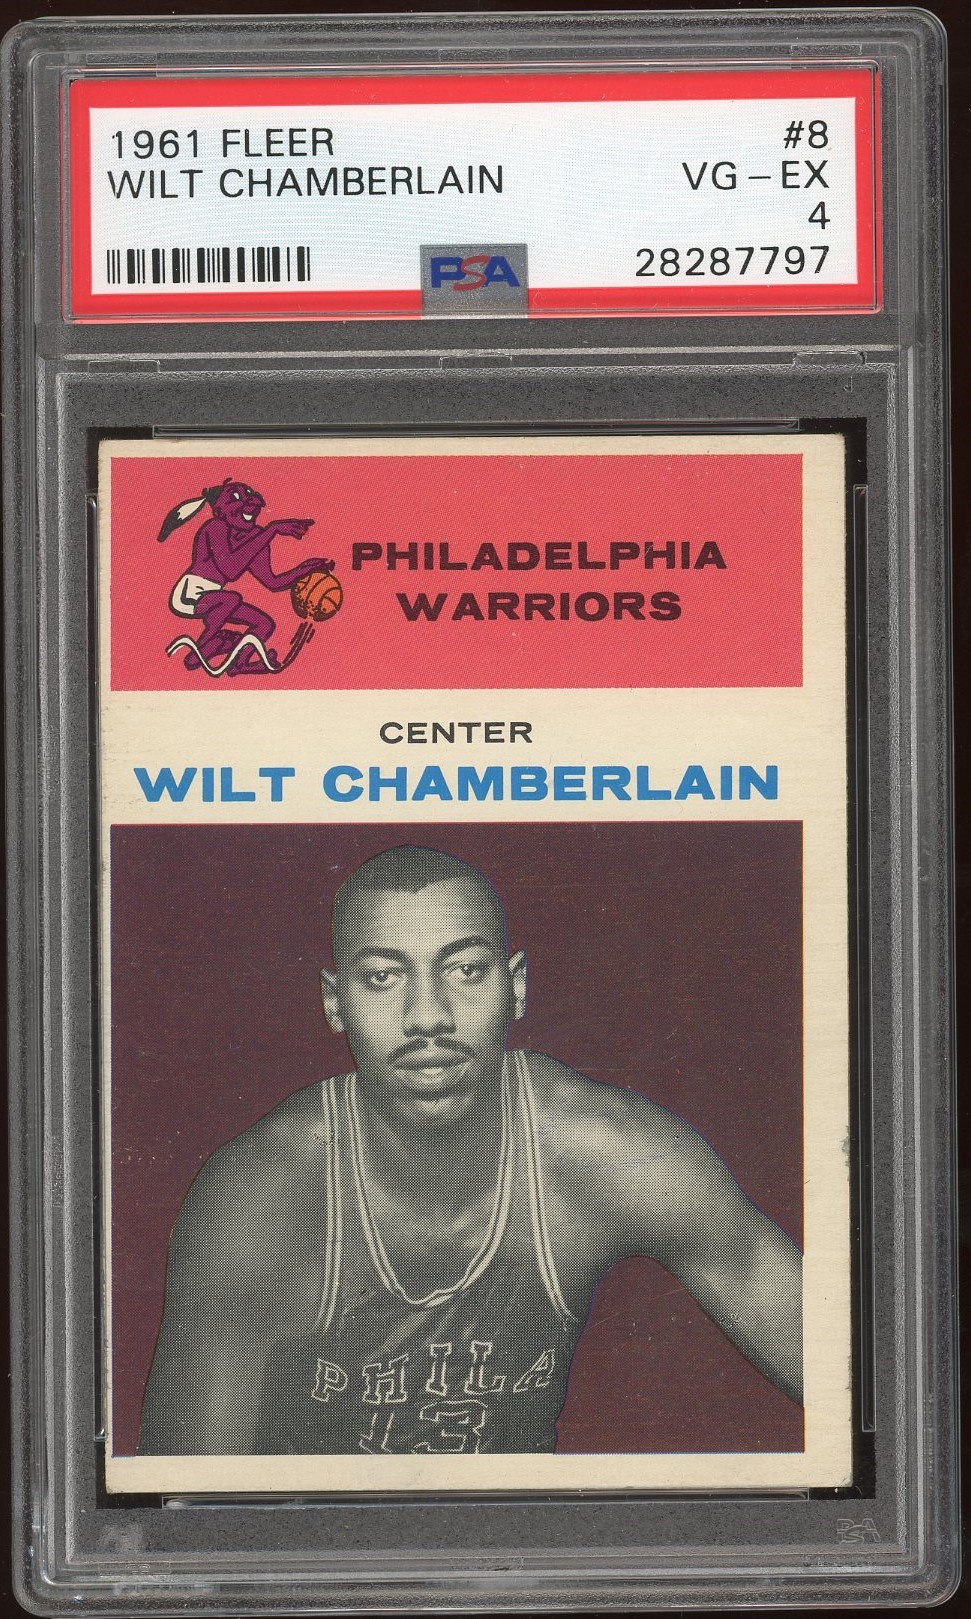 Basketball Cards - 1961 Fleer Wilt Chamberlain #8 VG-EX PSA Graded 4